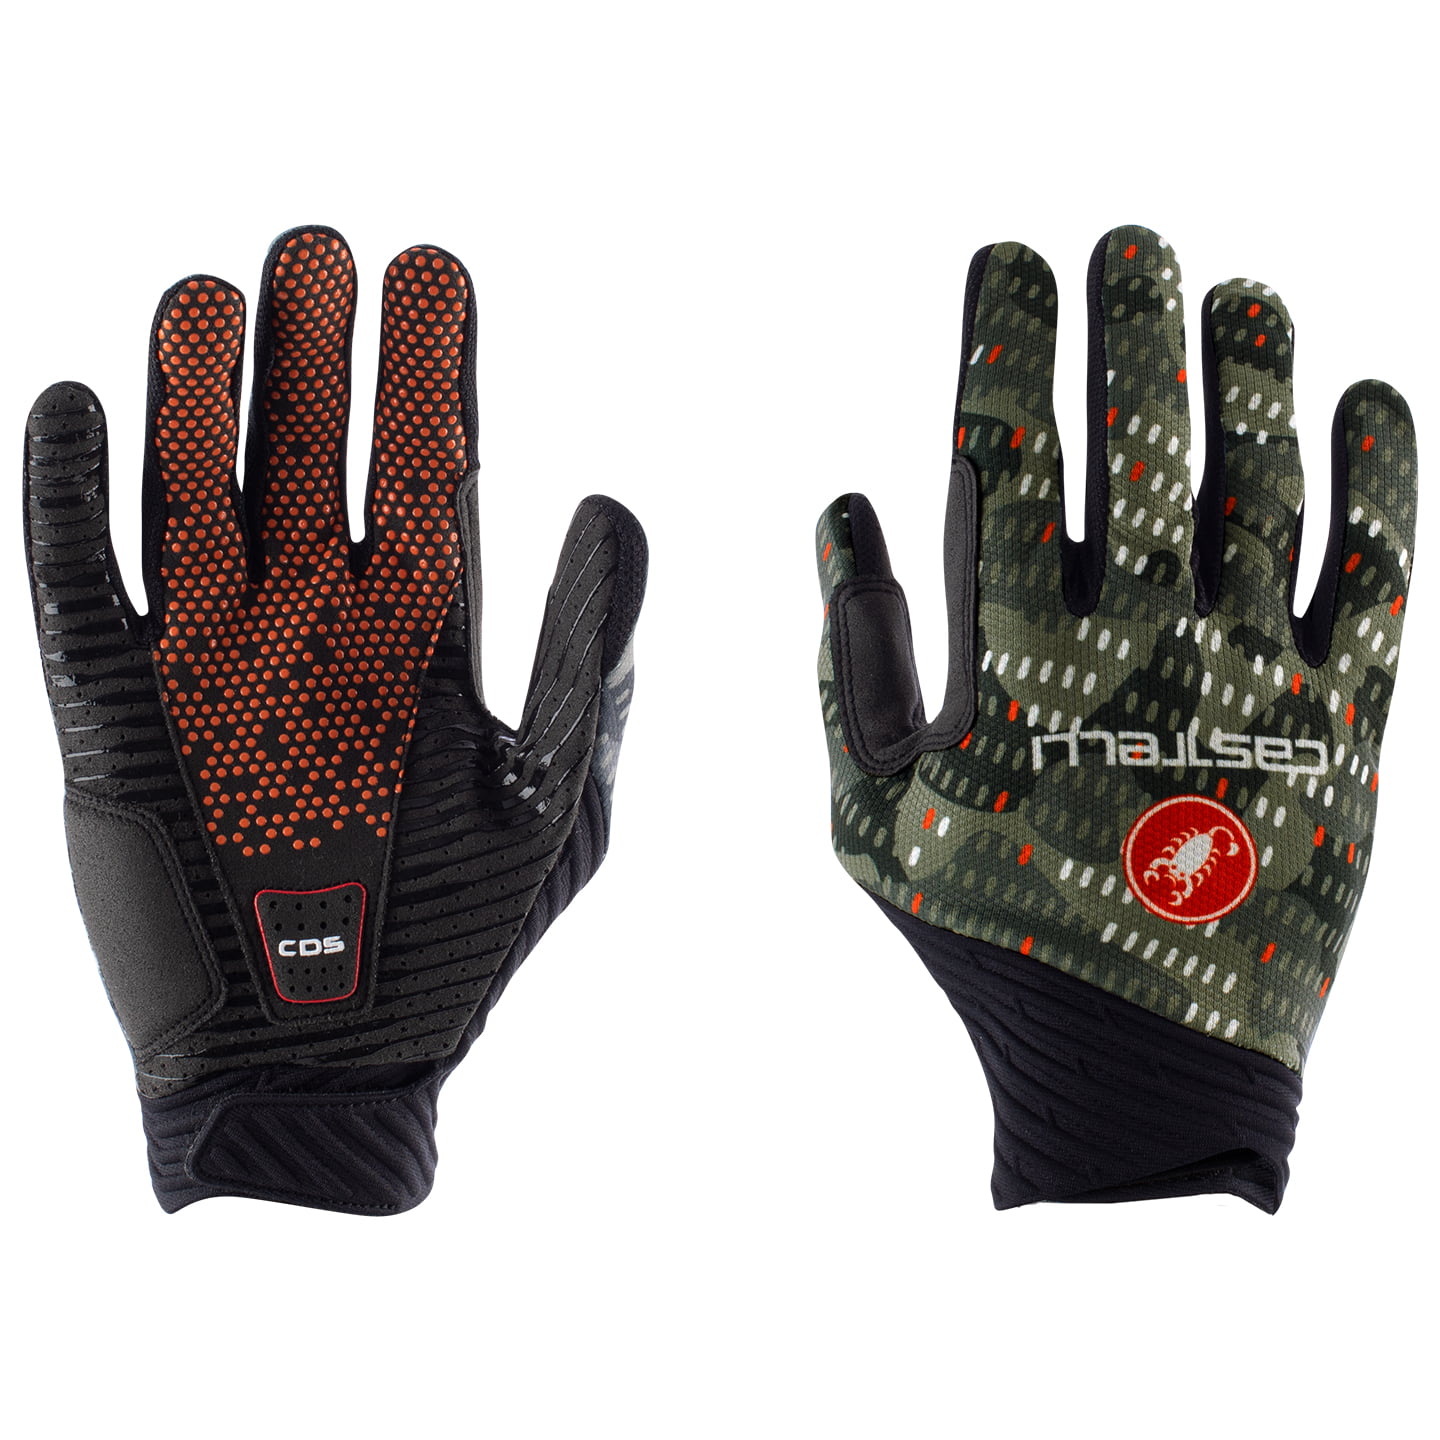 CASTELLI CW 6.1 Unlimited Full Finger Gloves Cycling Gloves, for men, size 2XL, Cycling gloves, Cycle clothing